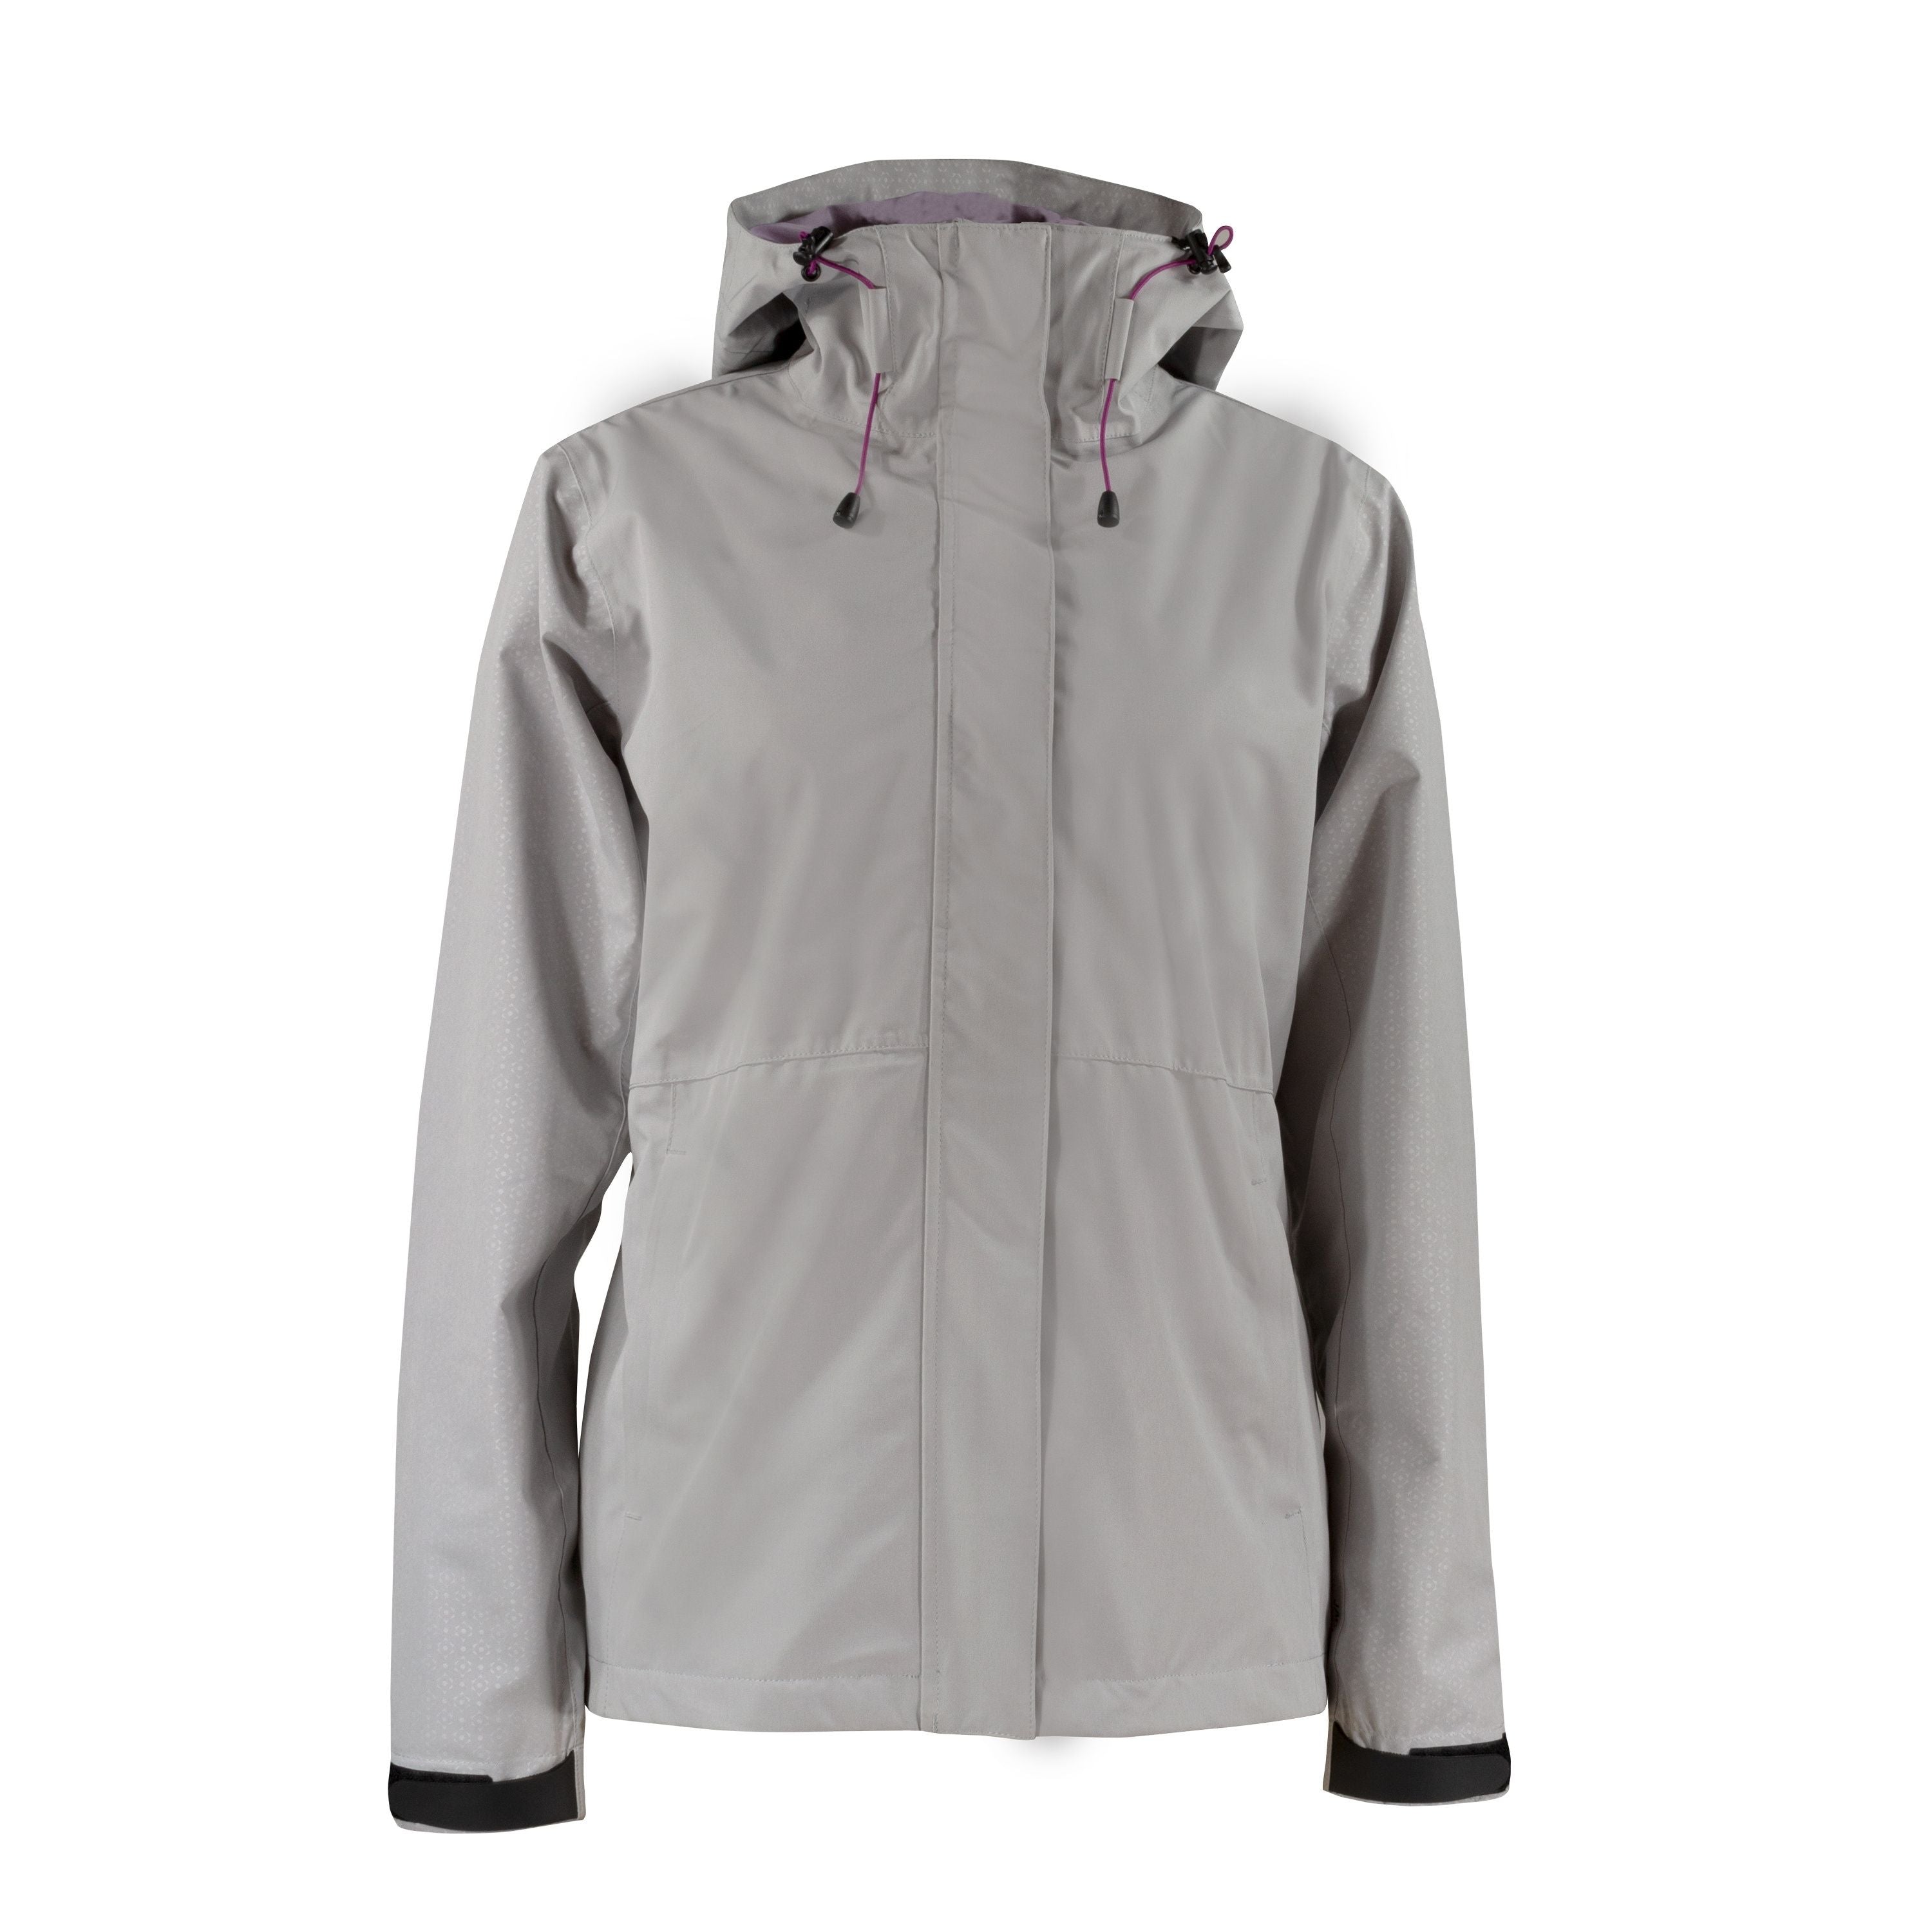 Manteau imperméable extensible - Femme||Stretchable rain jacket - Women’s